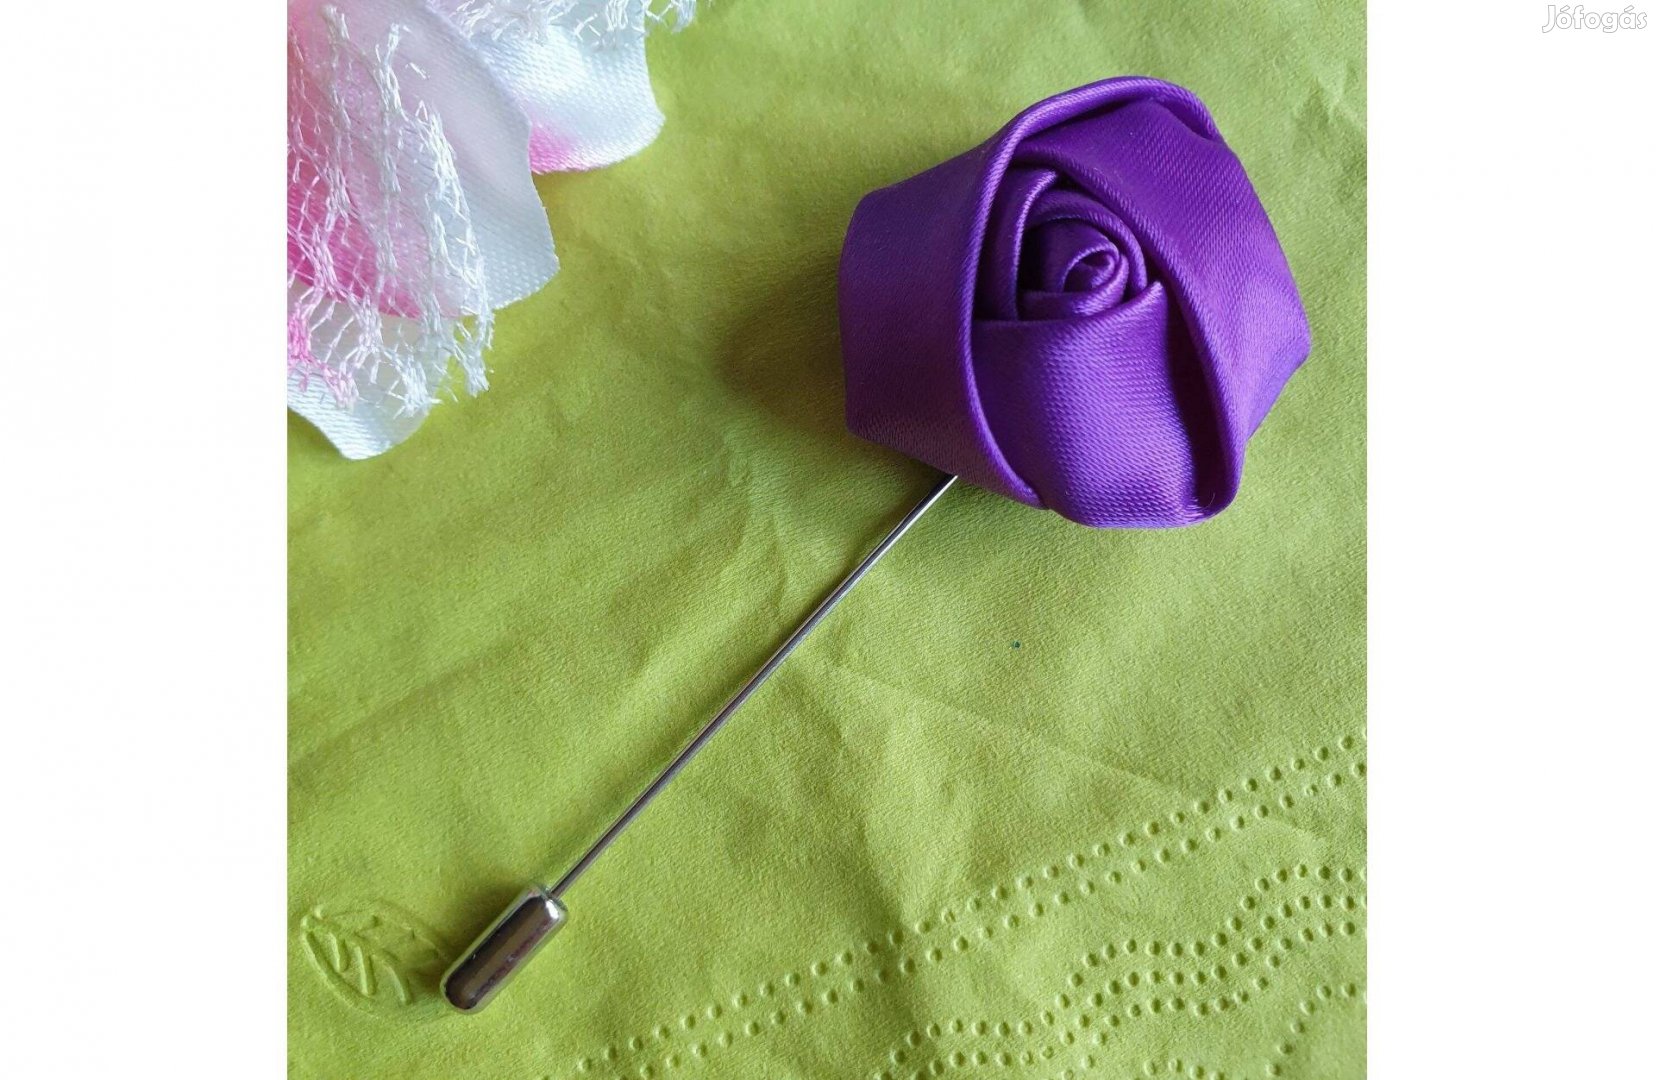 Hajtókatű, kitűző HAT19 - 40mm-es lila szatén rózsával